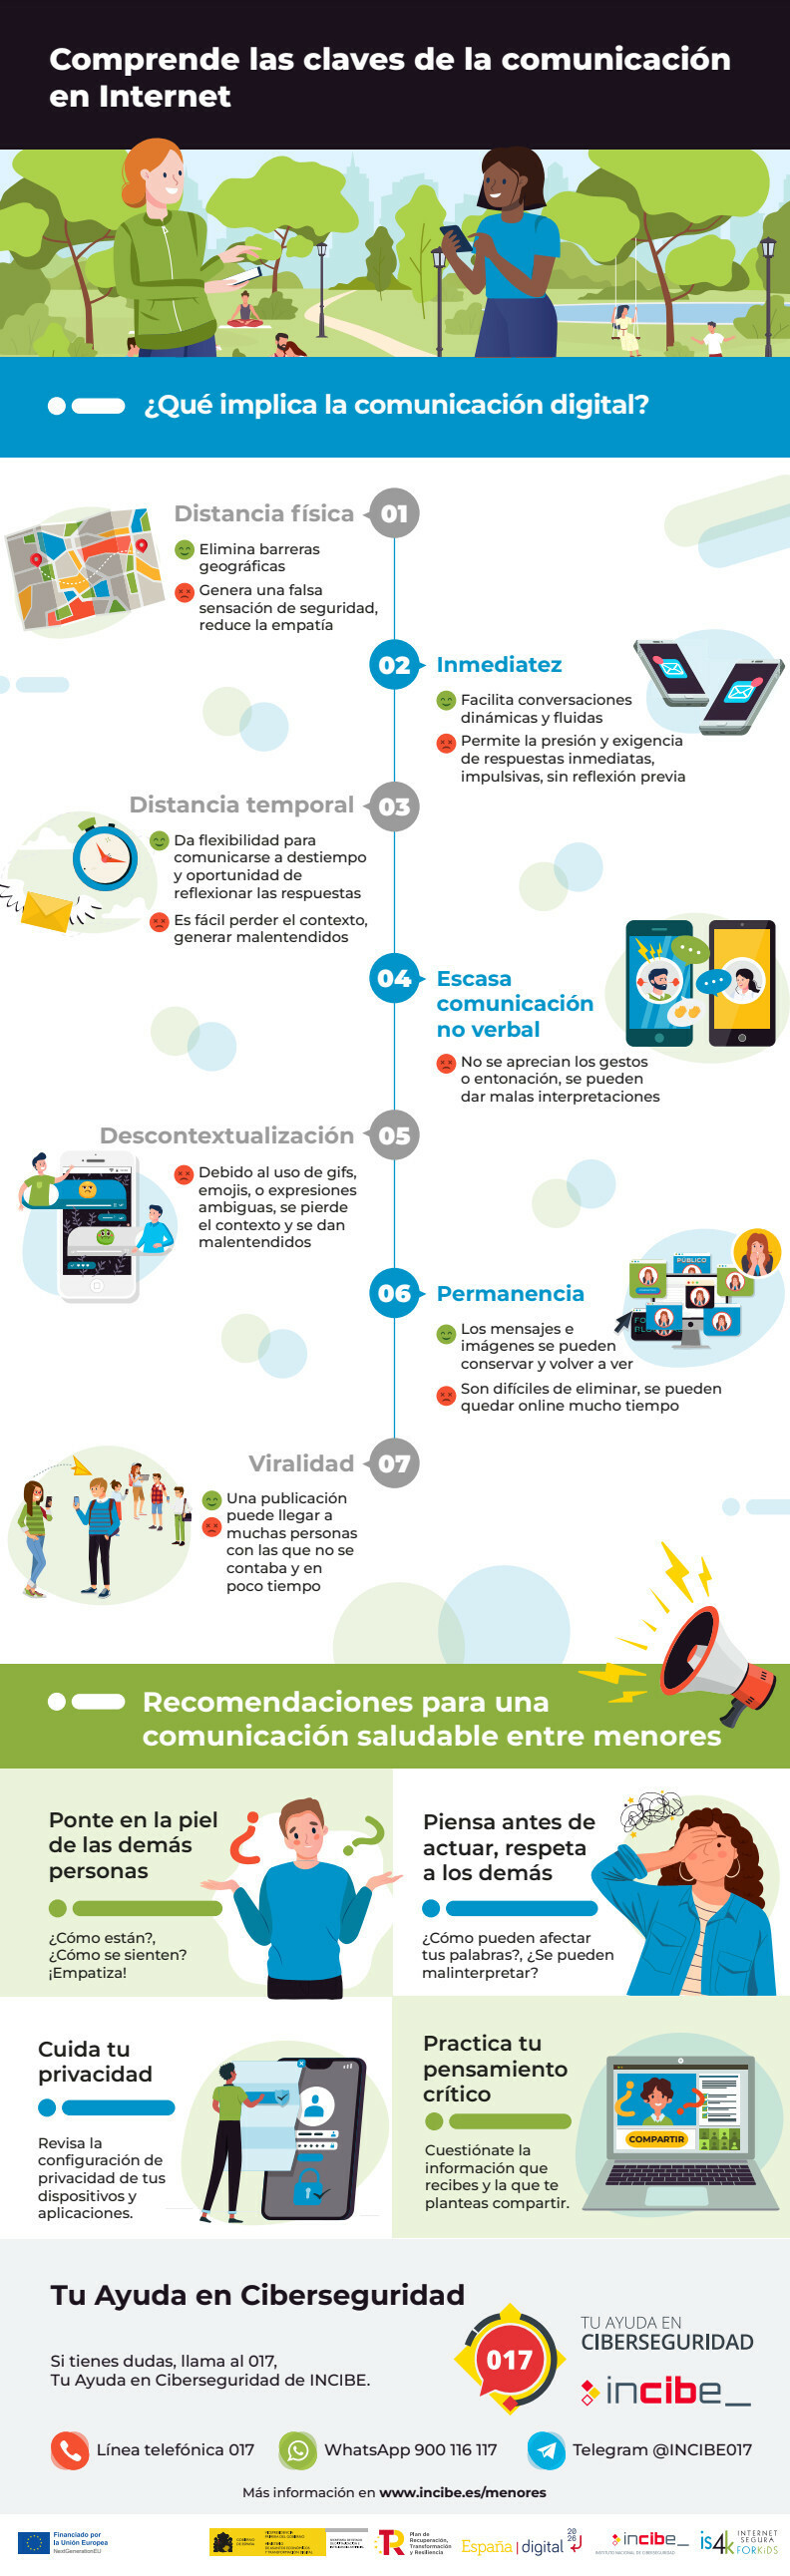 Infografia: Claves de la comunicación en Internet